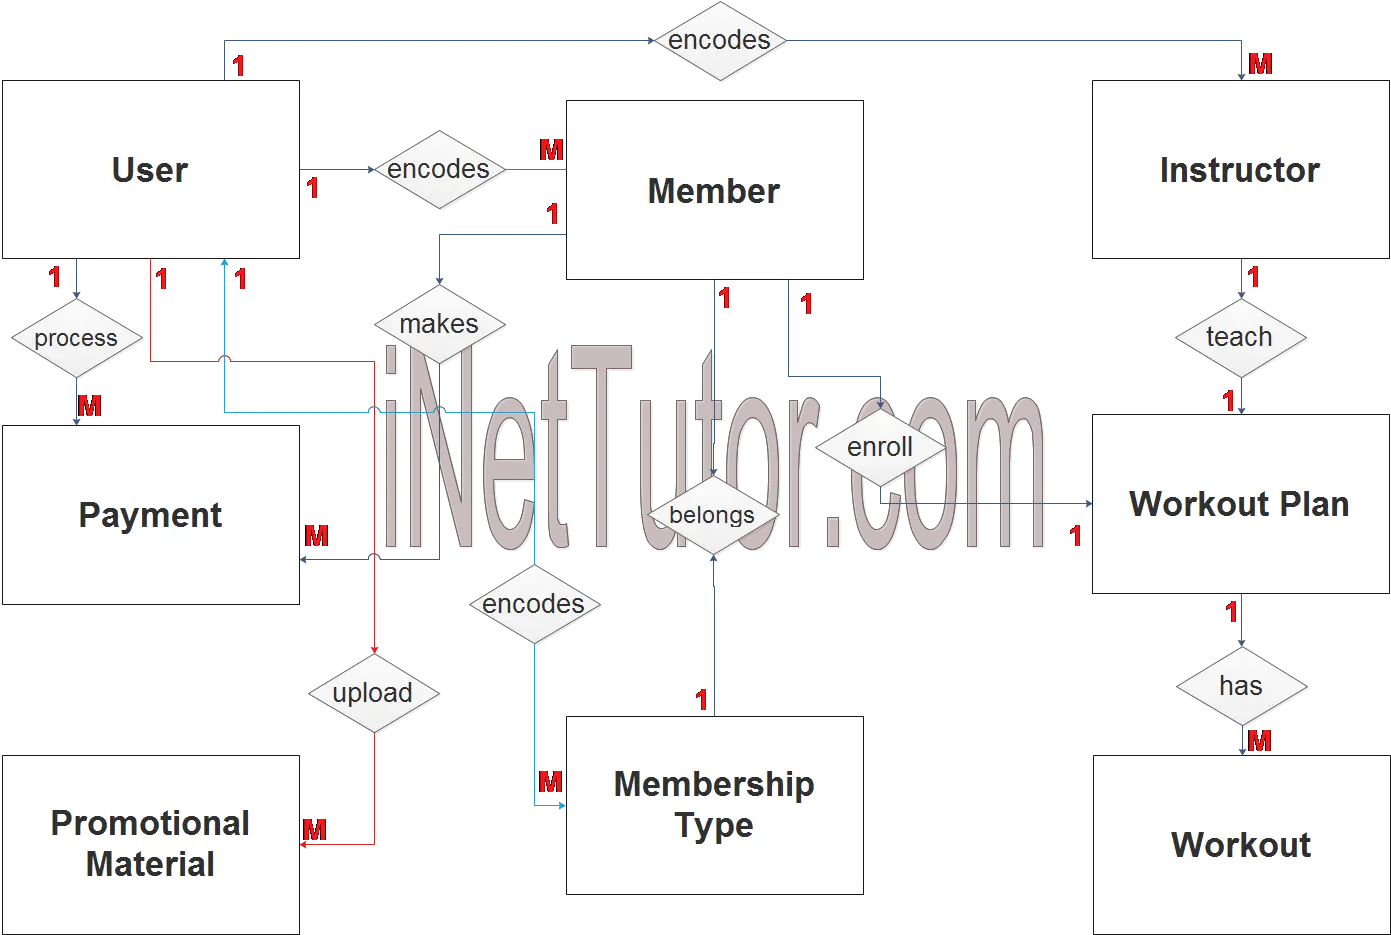 Gym Management System ER Diagram - Step 2 Table Relationship